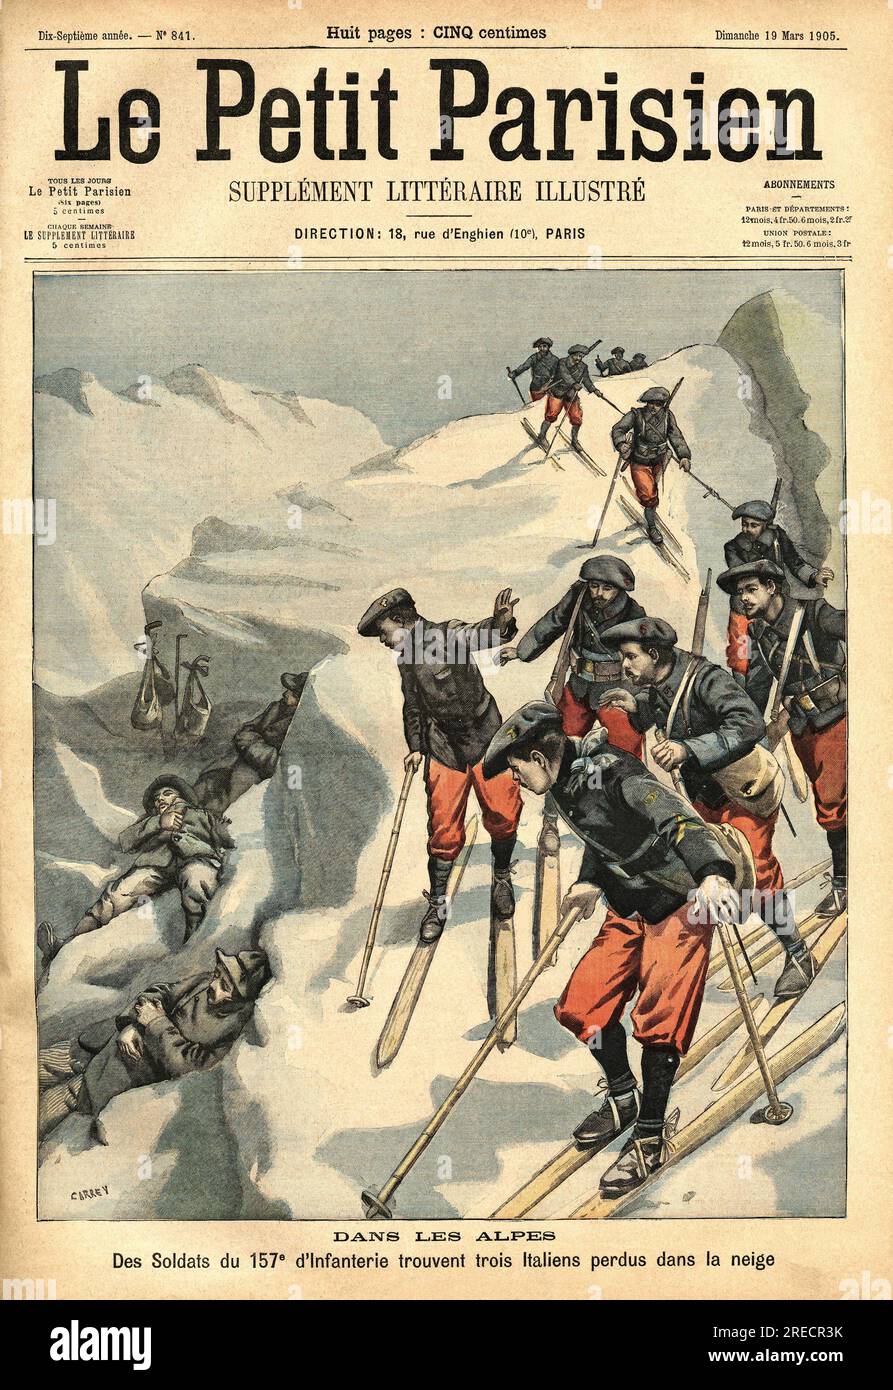 Trois italiens perdus dans les Alpes sont retrouvés par les soldats de la 157e infanterie. Gravure dans 'le petit parisienn', le 19031905. Banque D'Images